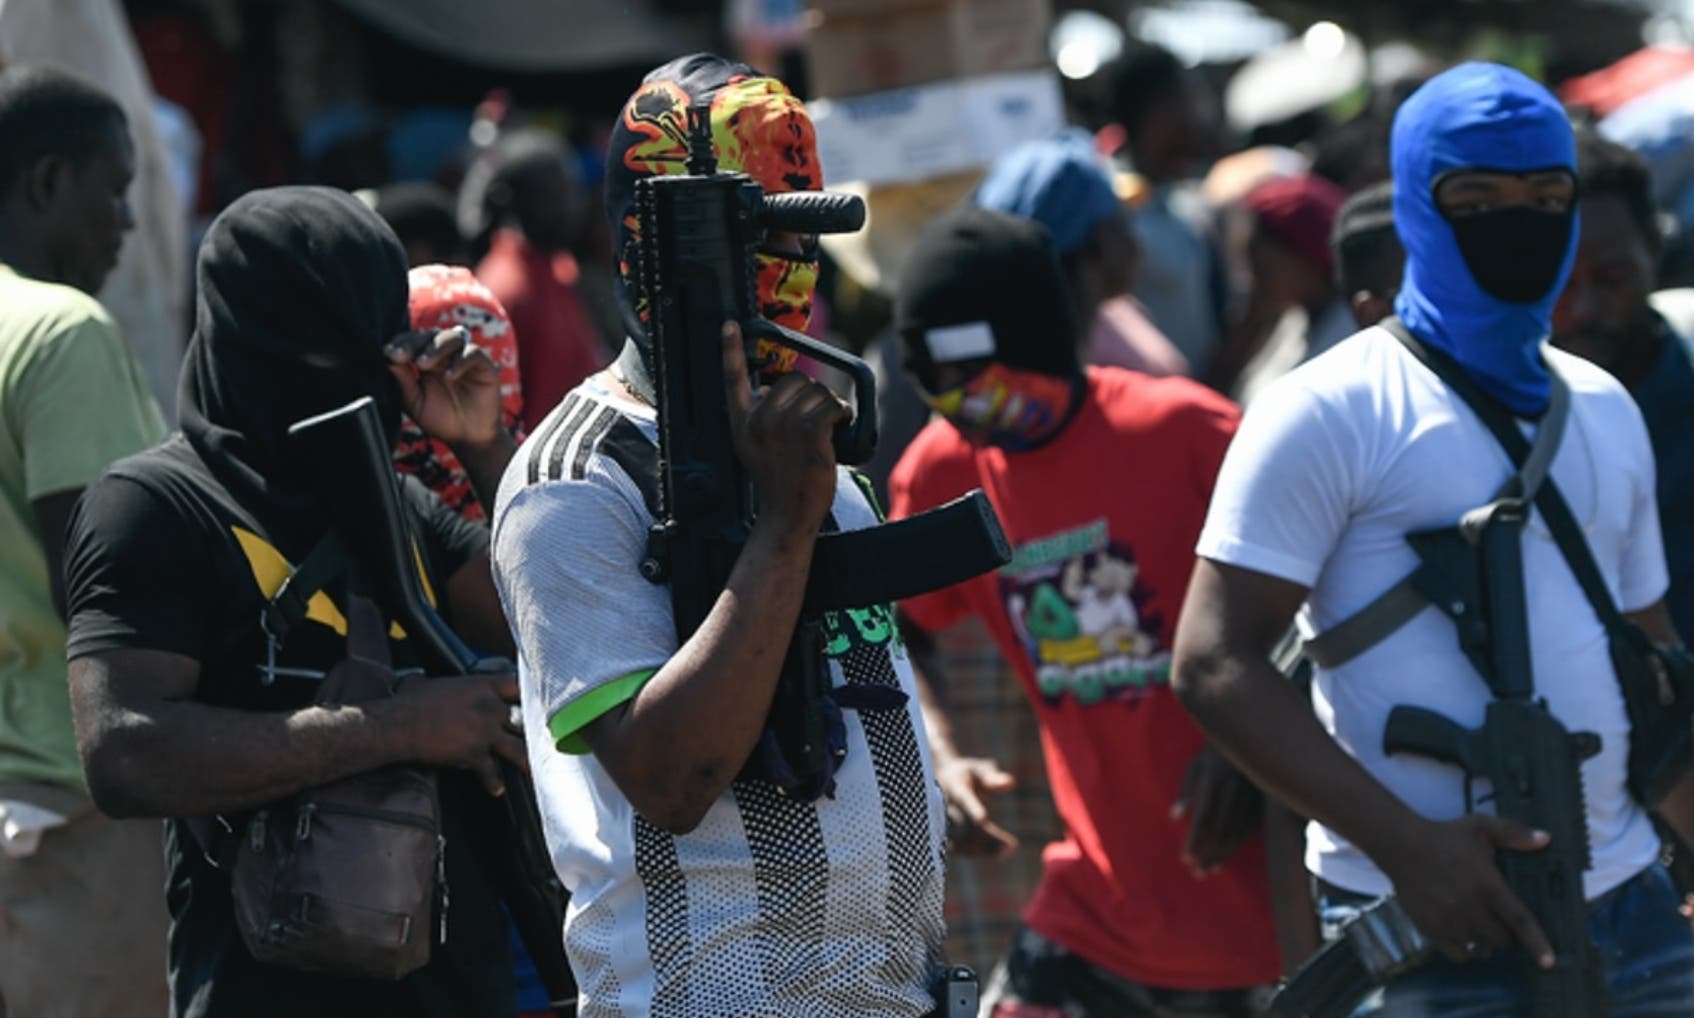 Haití: La llegada de armas ilegales de EEUU multiplica la violencia, según la ONU